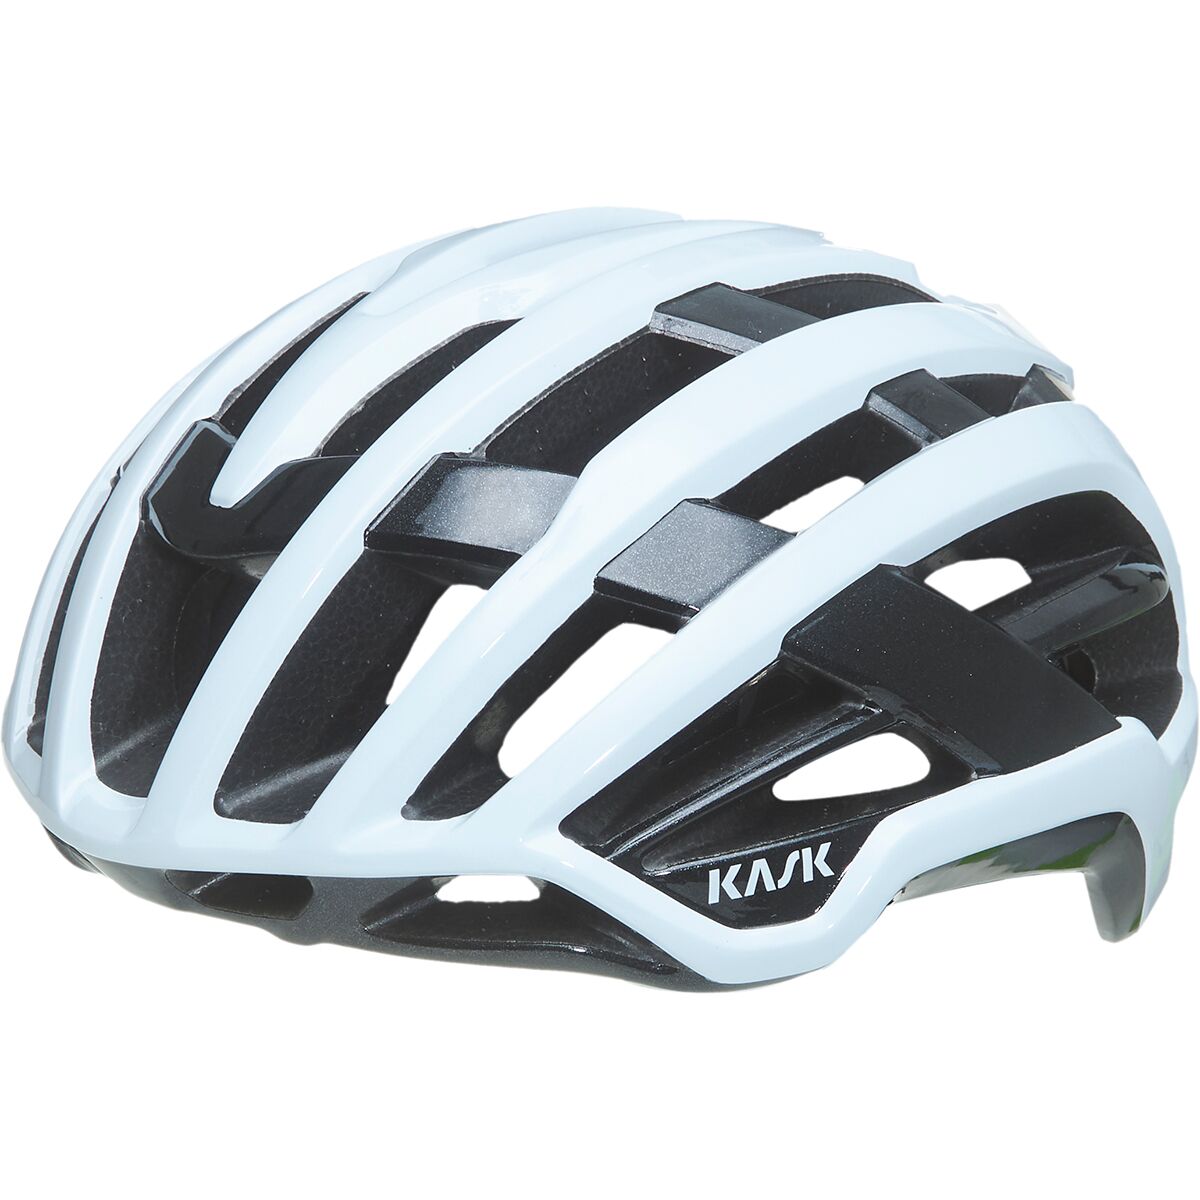 Photos - Protective Gear Set Kask Valegro Helmet 